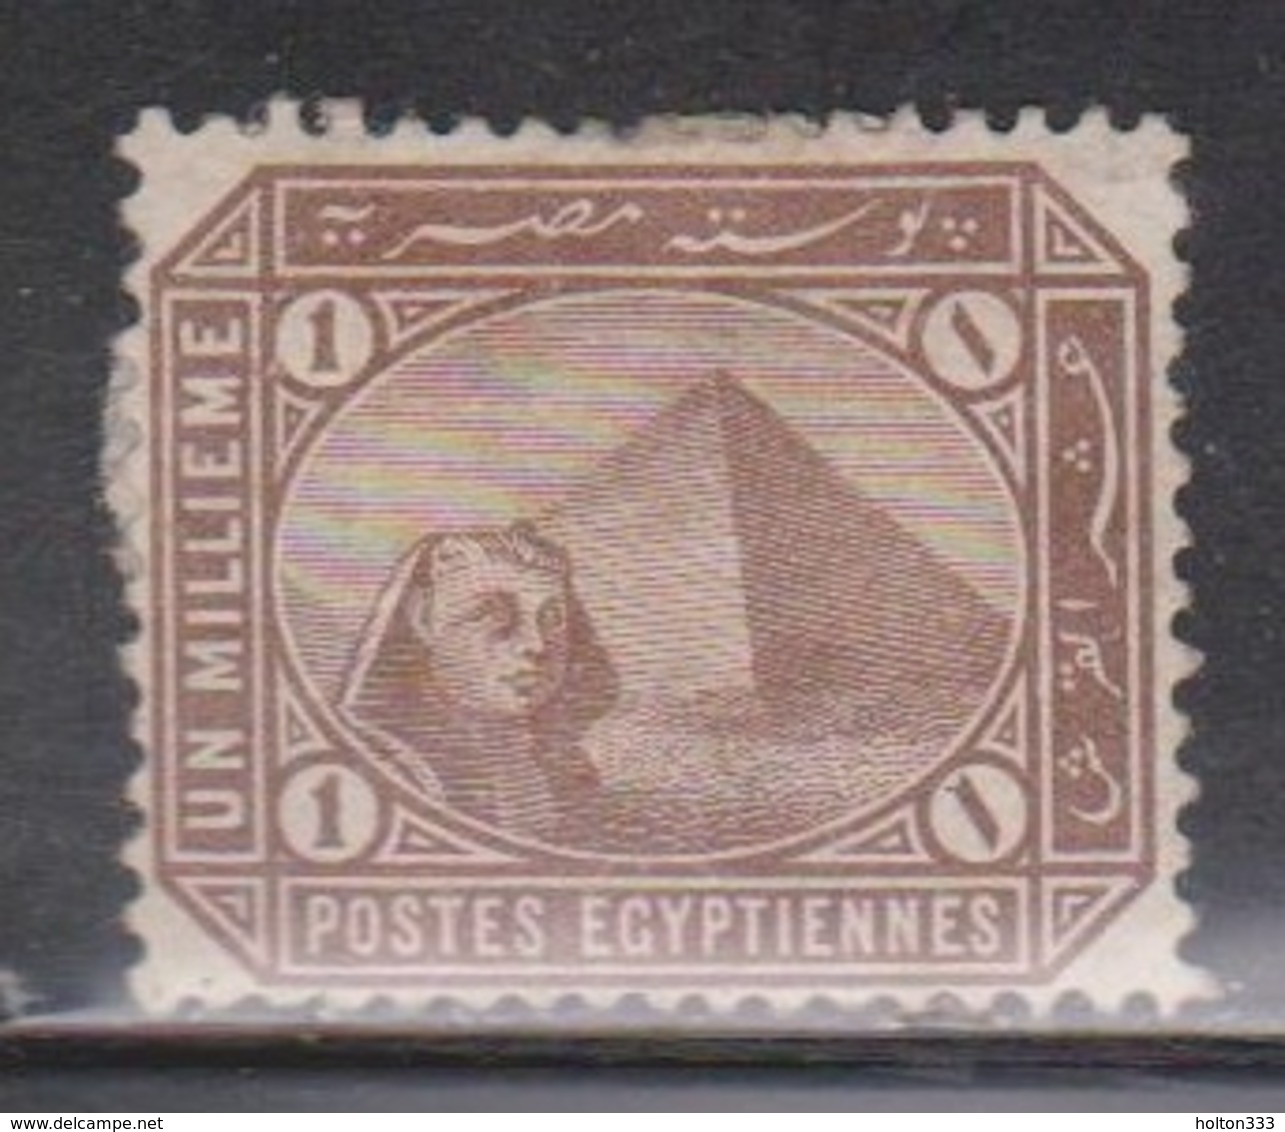 EGYPT Scott # 43 Unused - Sphinx & Pyramid - Uncancelled On Piece - 1866-1914 Khedivate Of Egypt